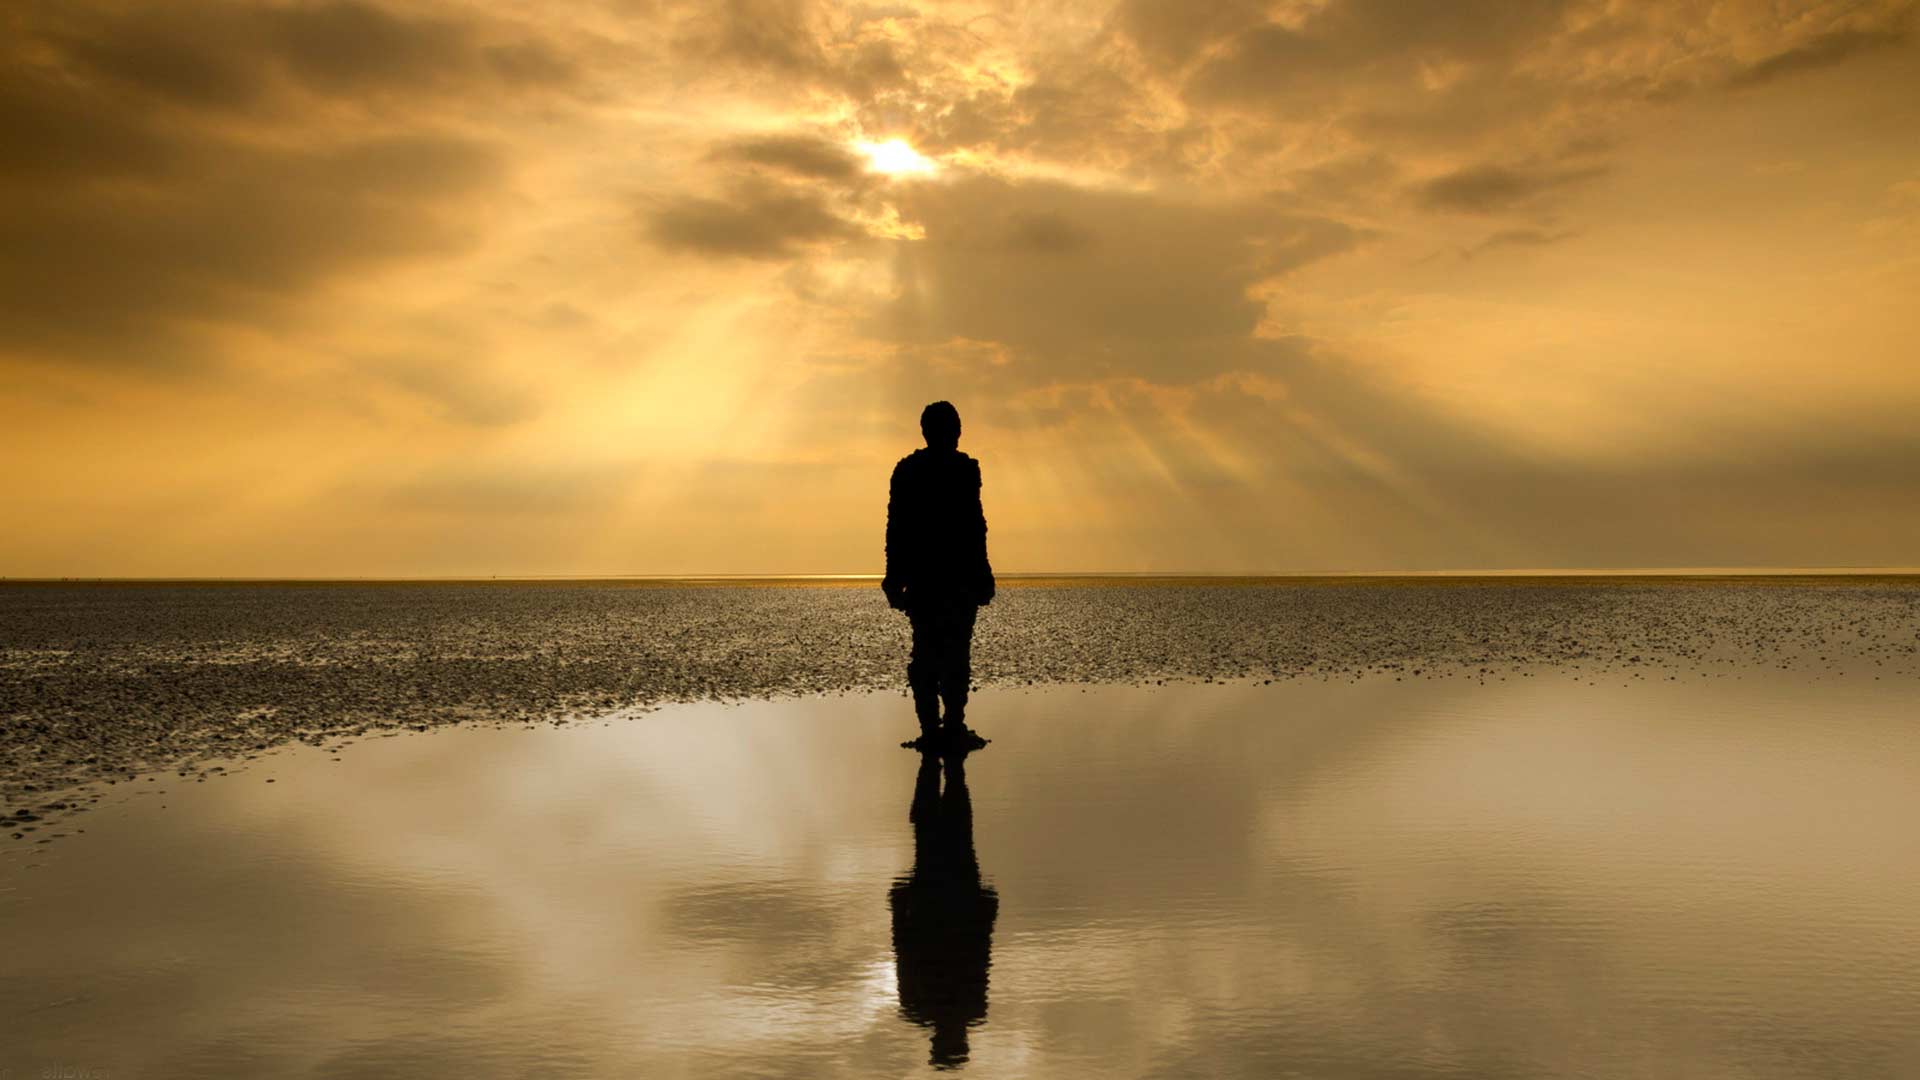 Эффект размышления. Одинокий человек. Одинокая фигура на берегу моря. Одинокий мужчина на берегу. Силуэт уходящего мужчины.